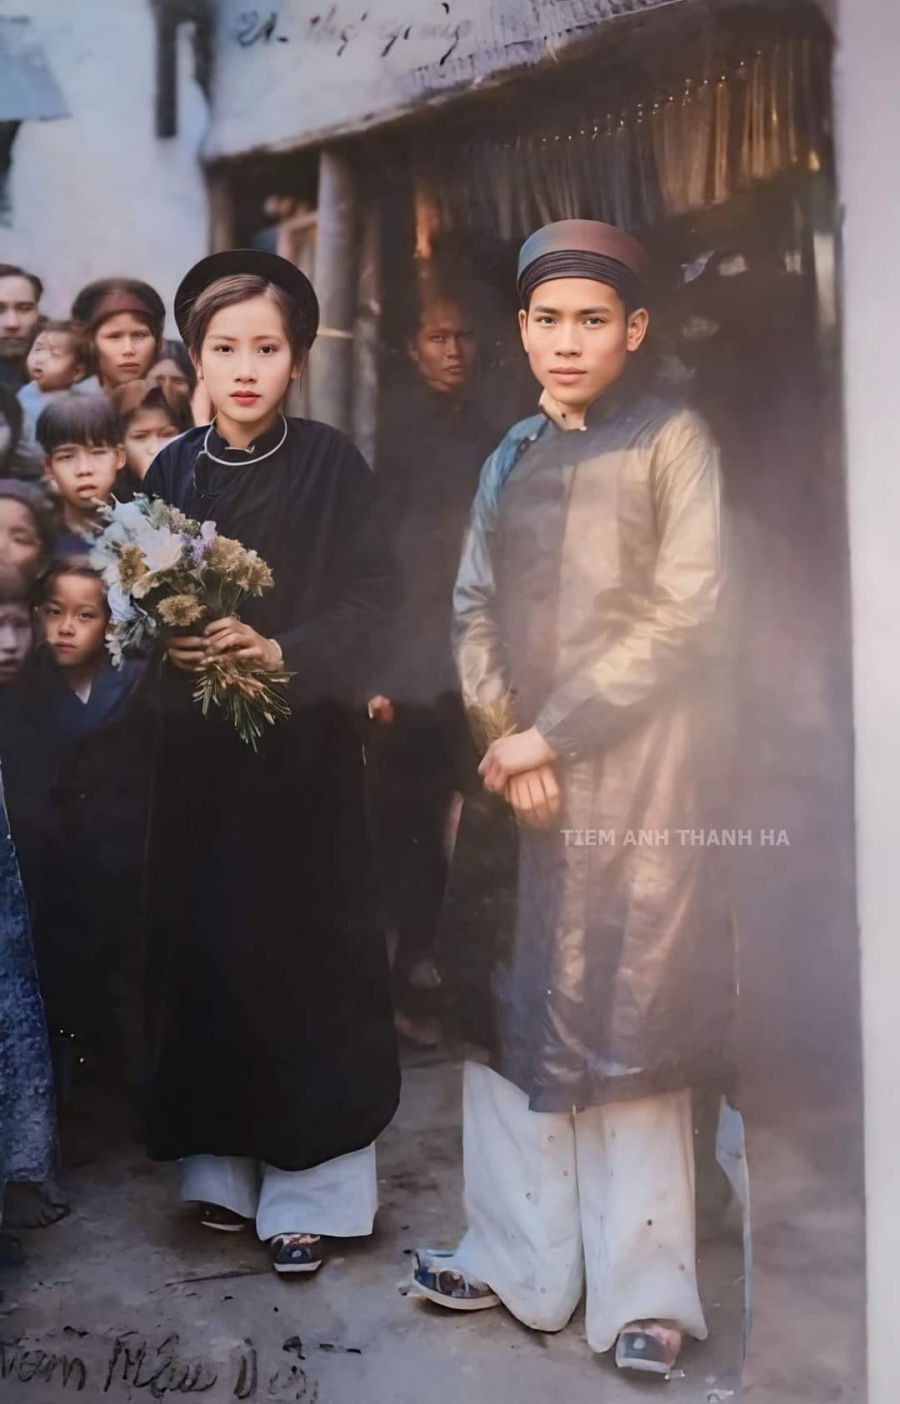 Ảnh cưới của một gia đình giàu có ở Hà Nội năm 1938.